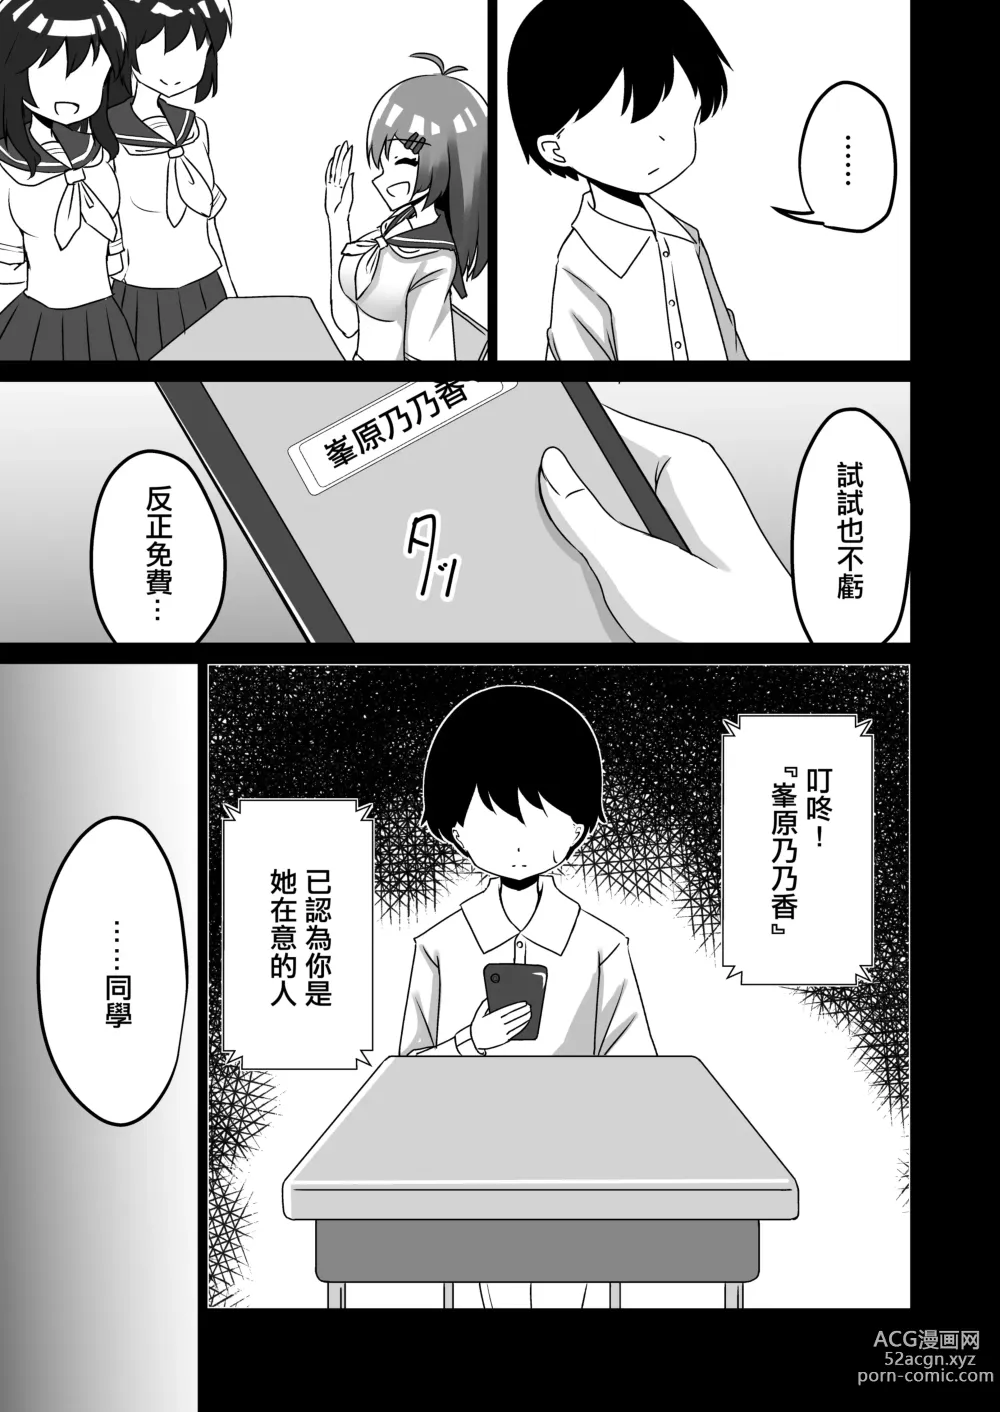 Page 9 of doujinshi 在催眠軟件下少女深陷戀愛依存的故事